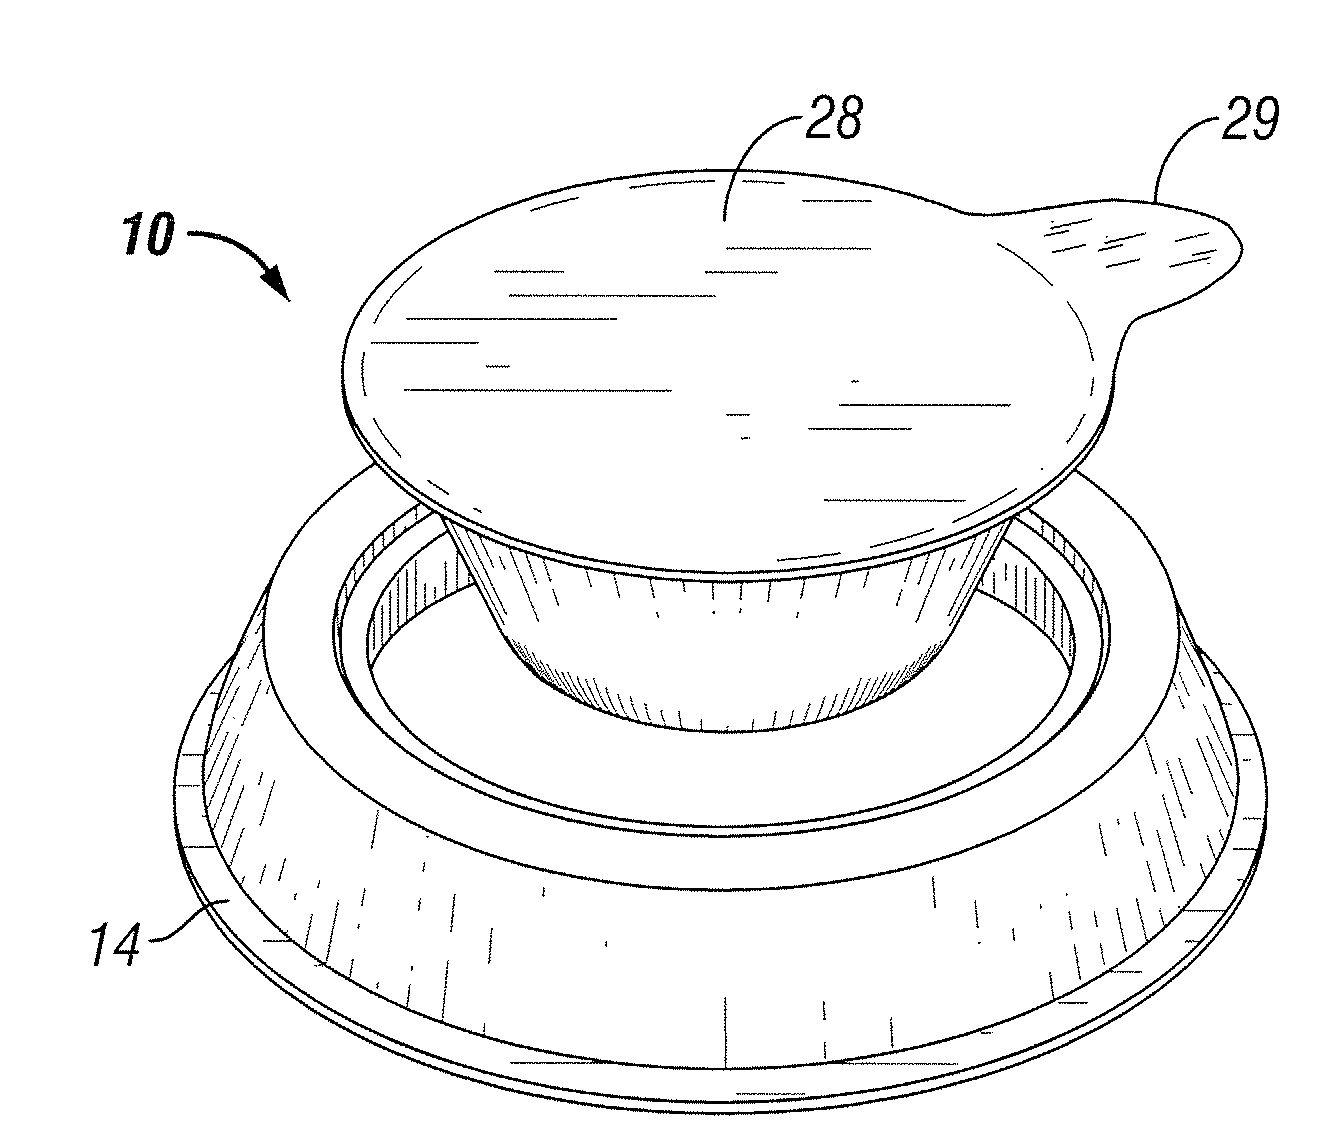 Multi-piece feeding bowl